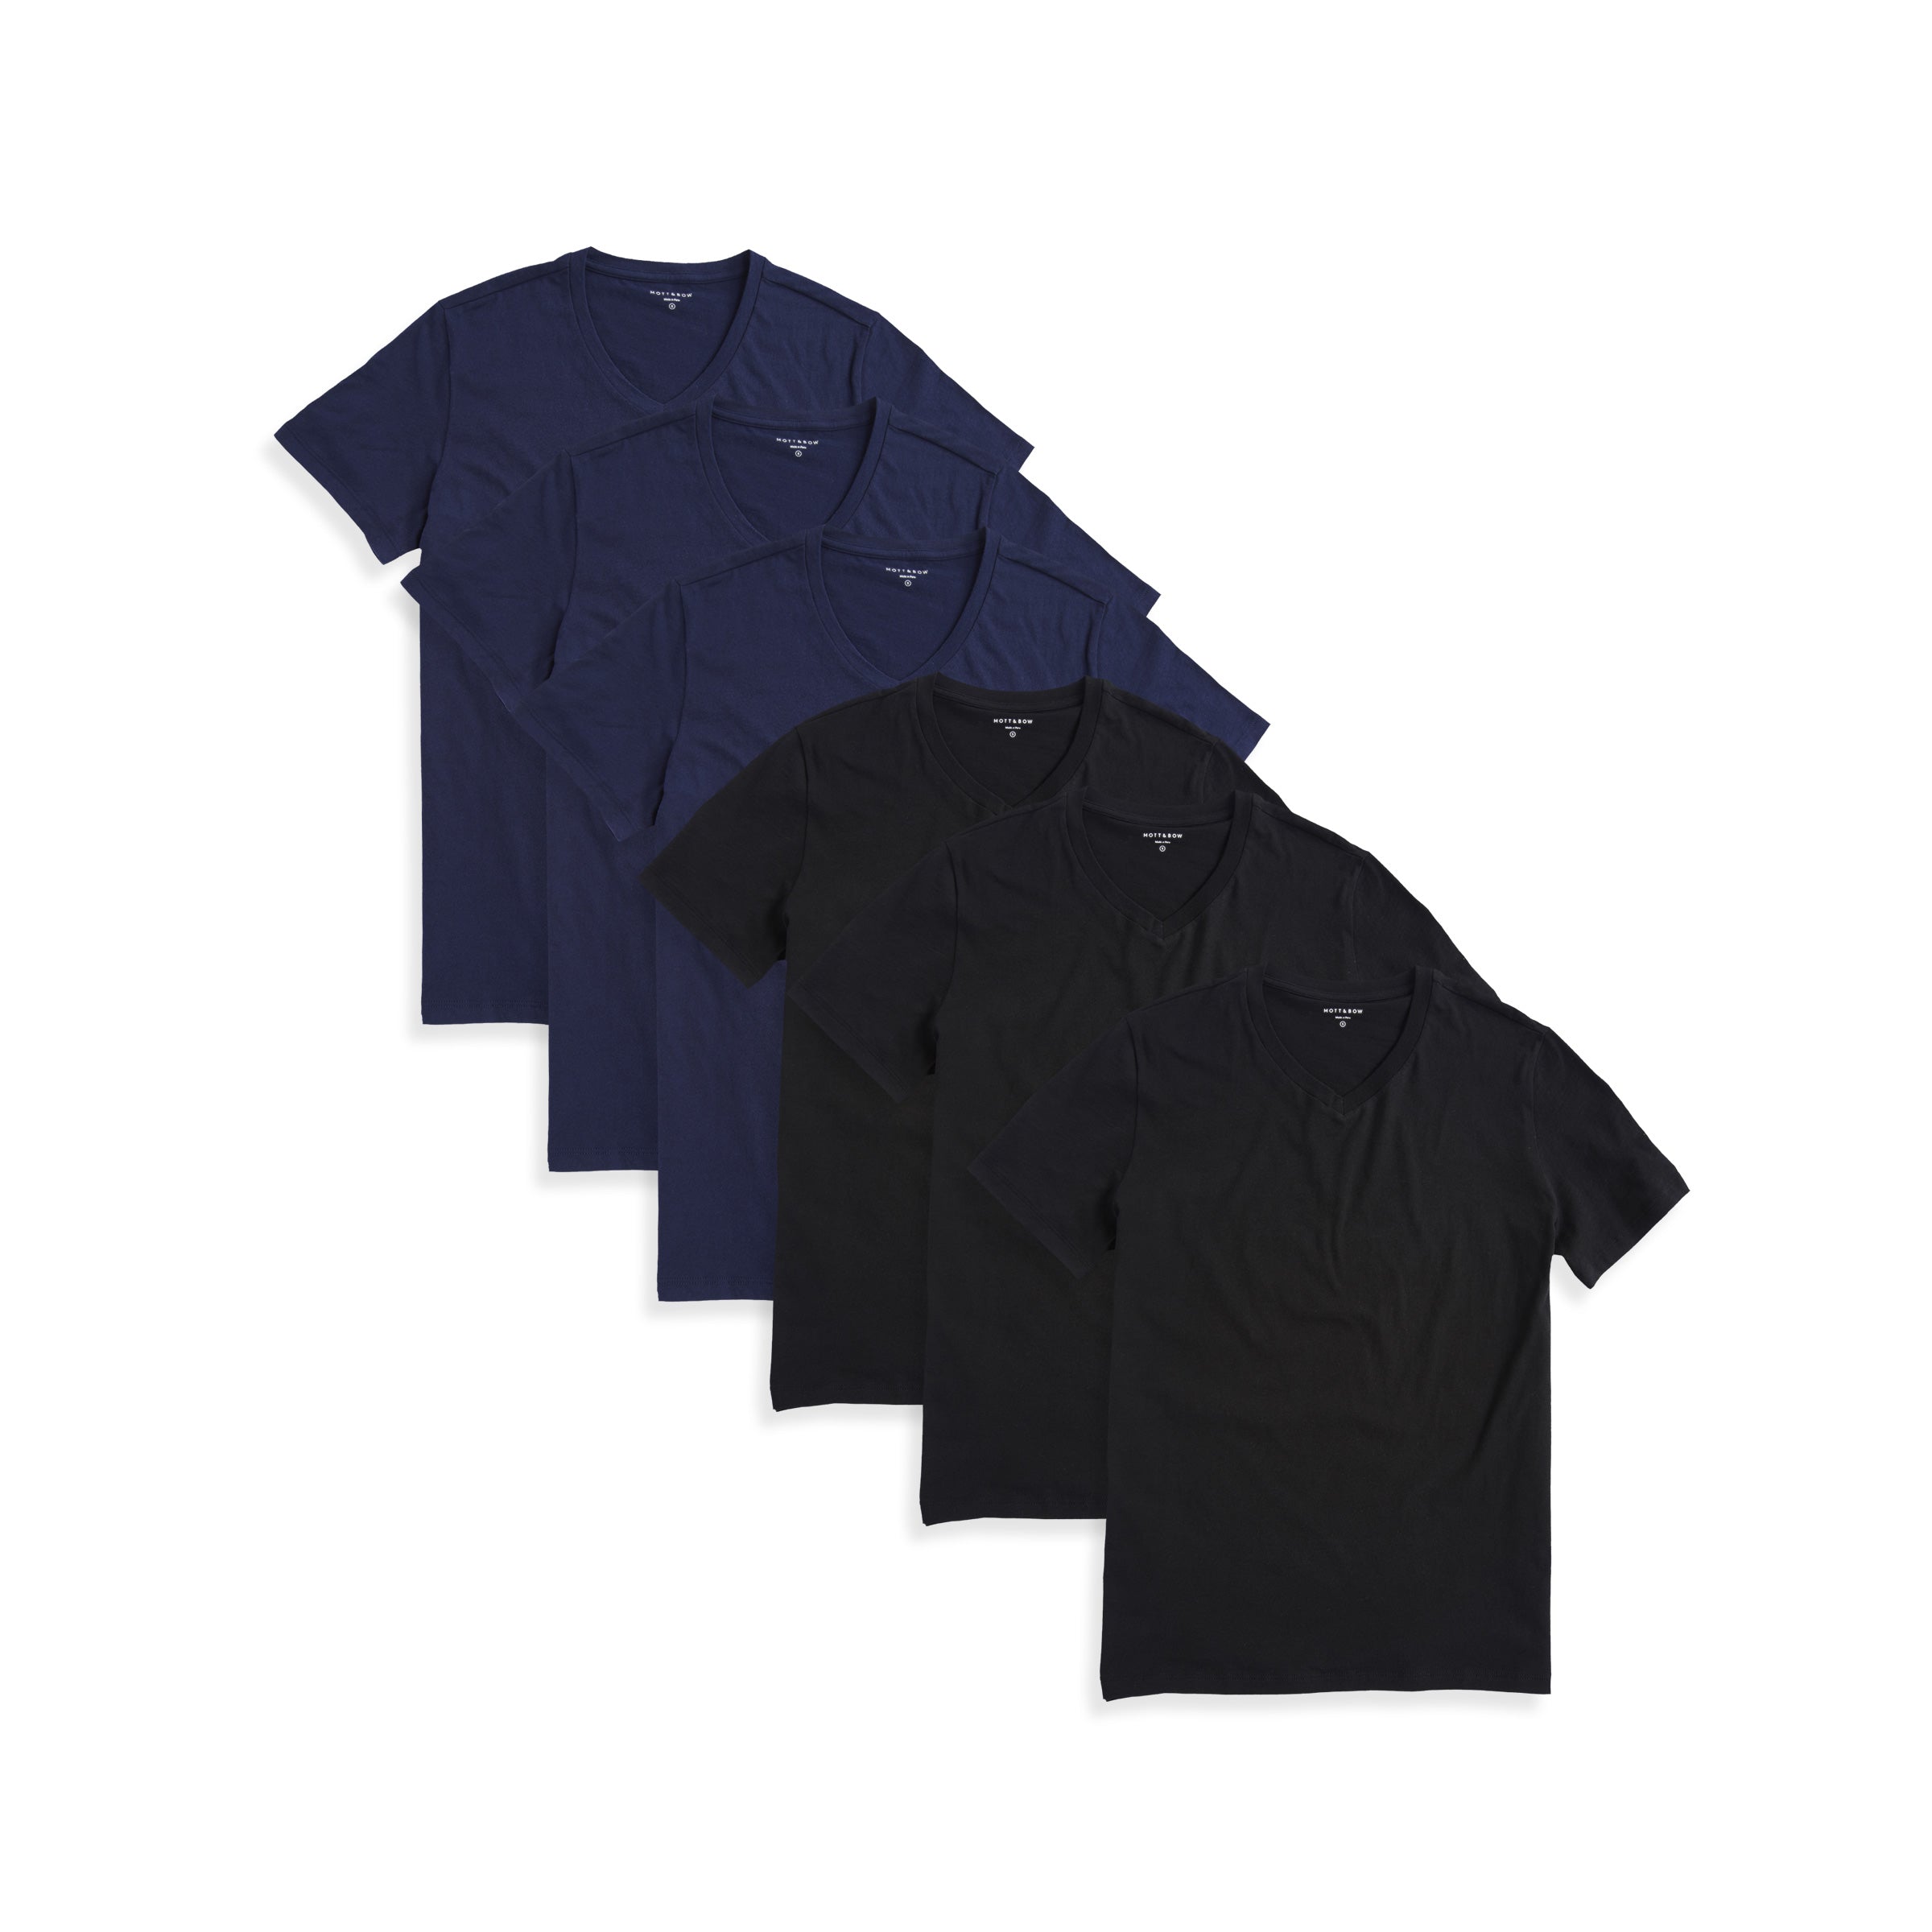  wearing Negro/Azul marino Classic V-Neck Driggs 6-Pack